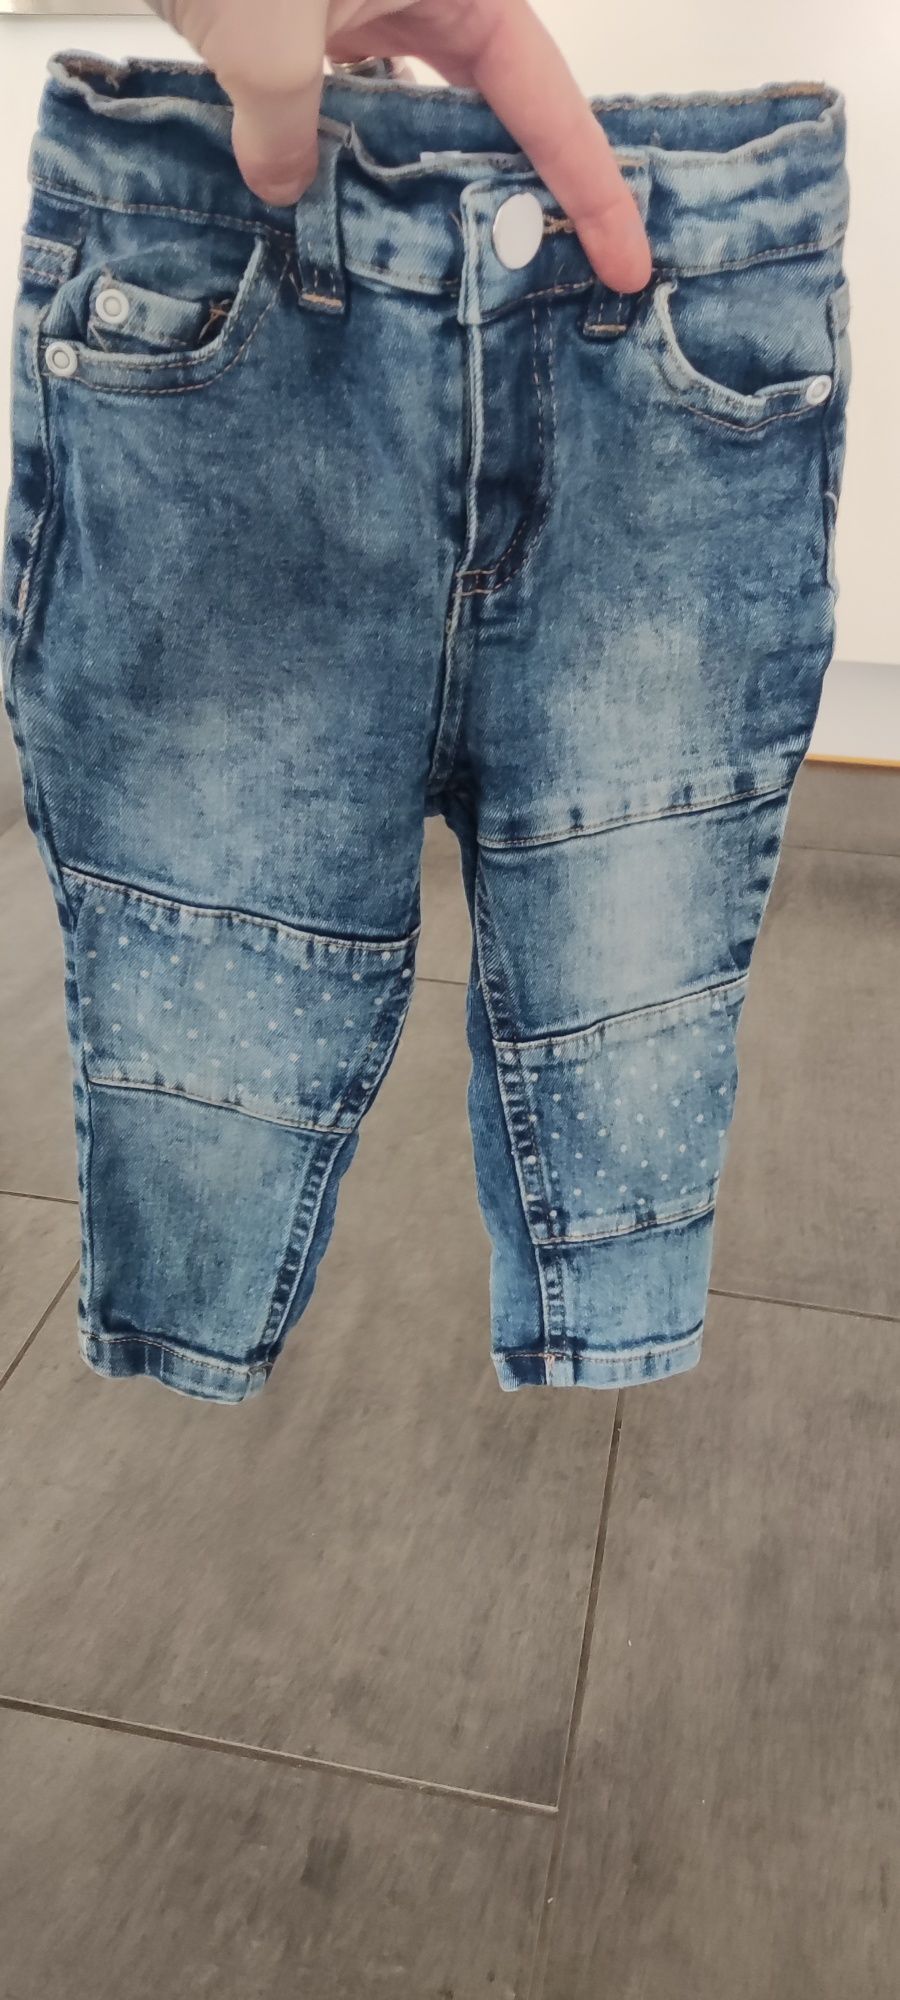 Spodnie jeansy groszki, rozmiar 86.